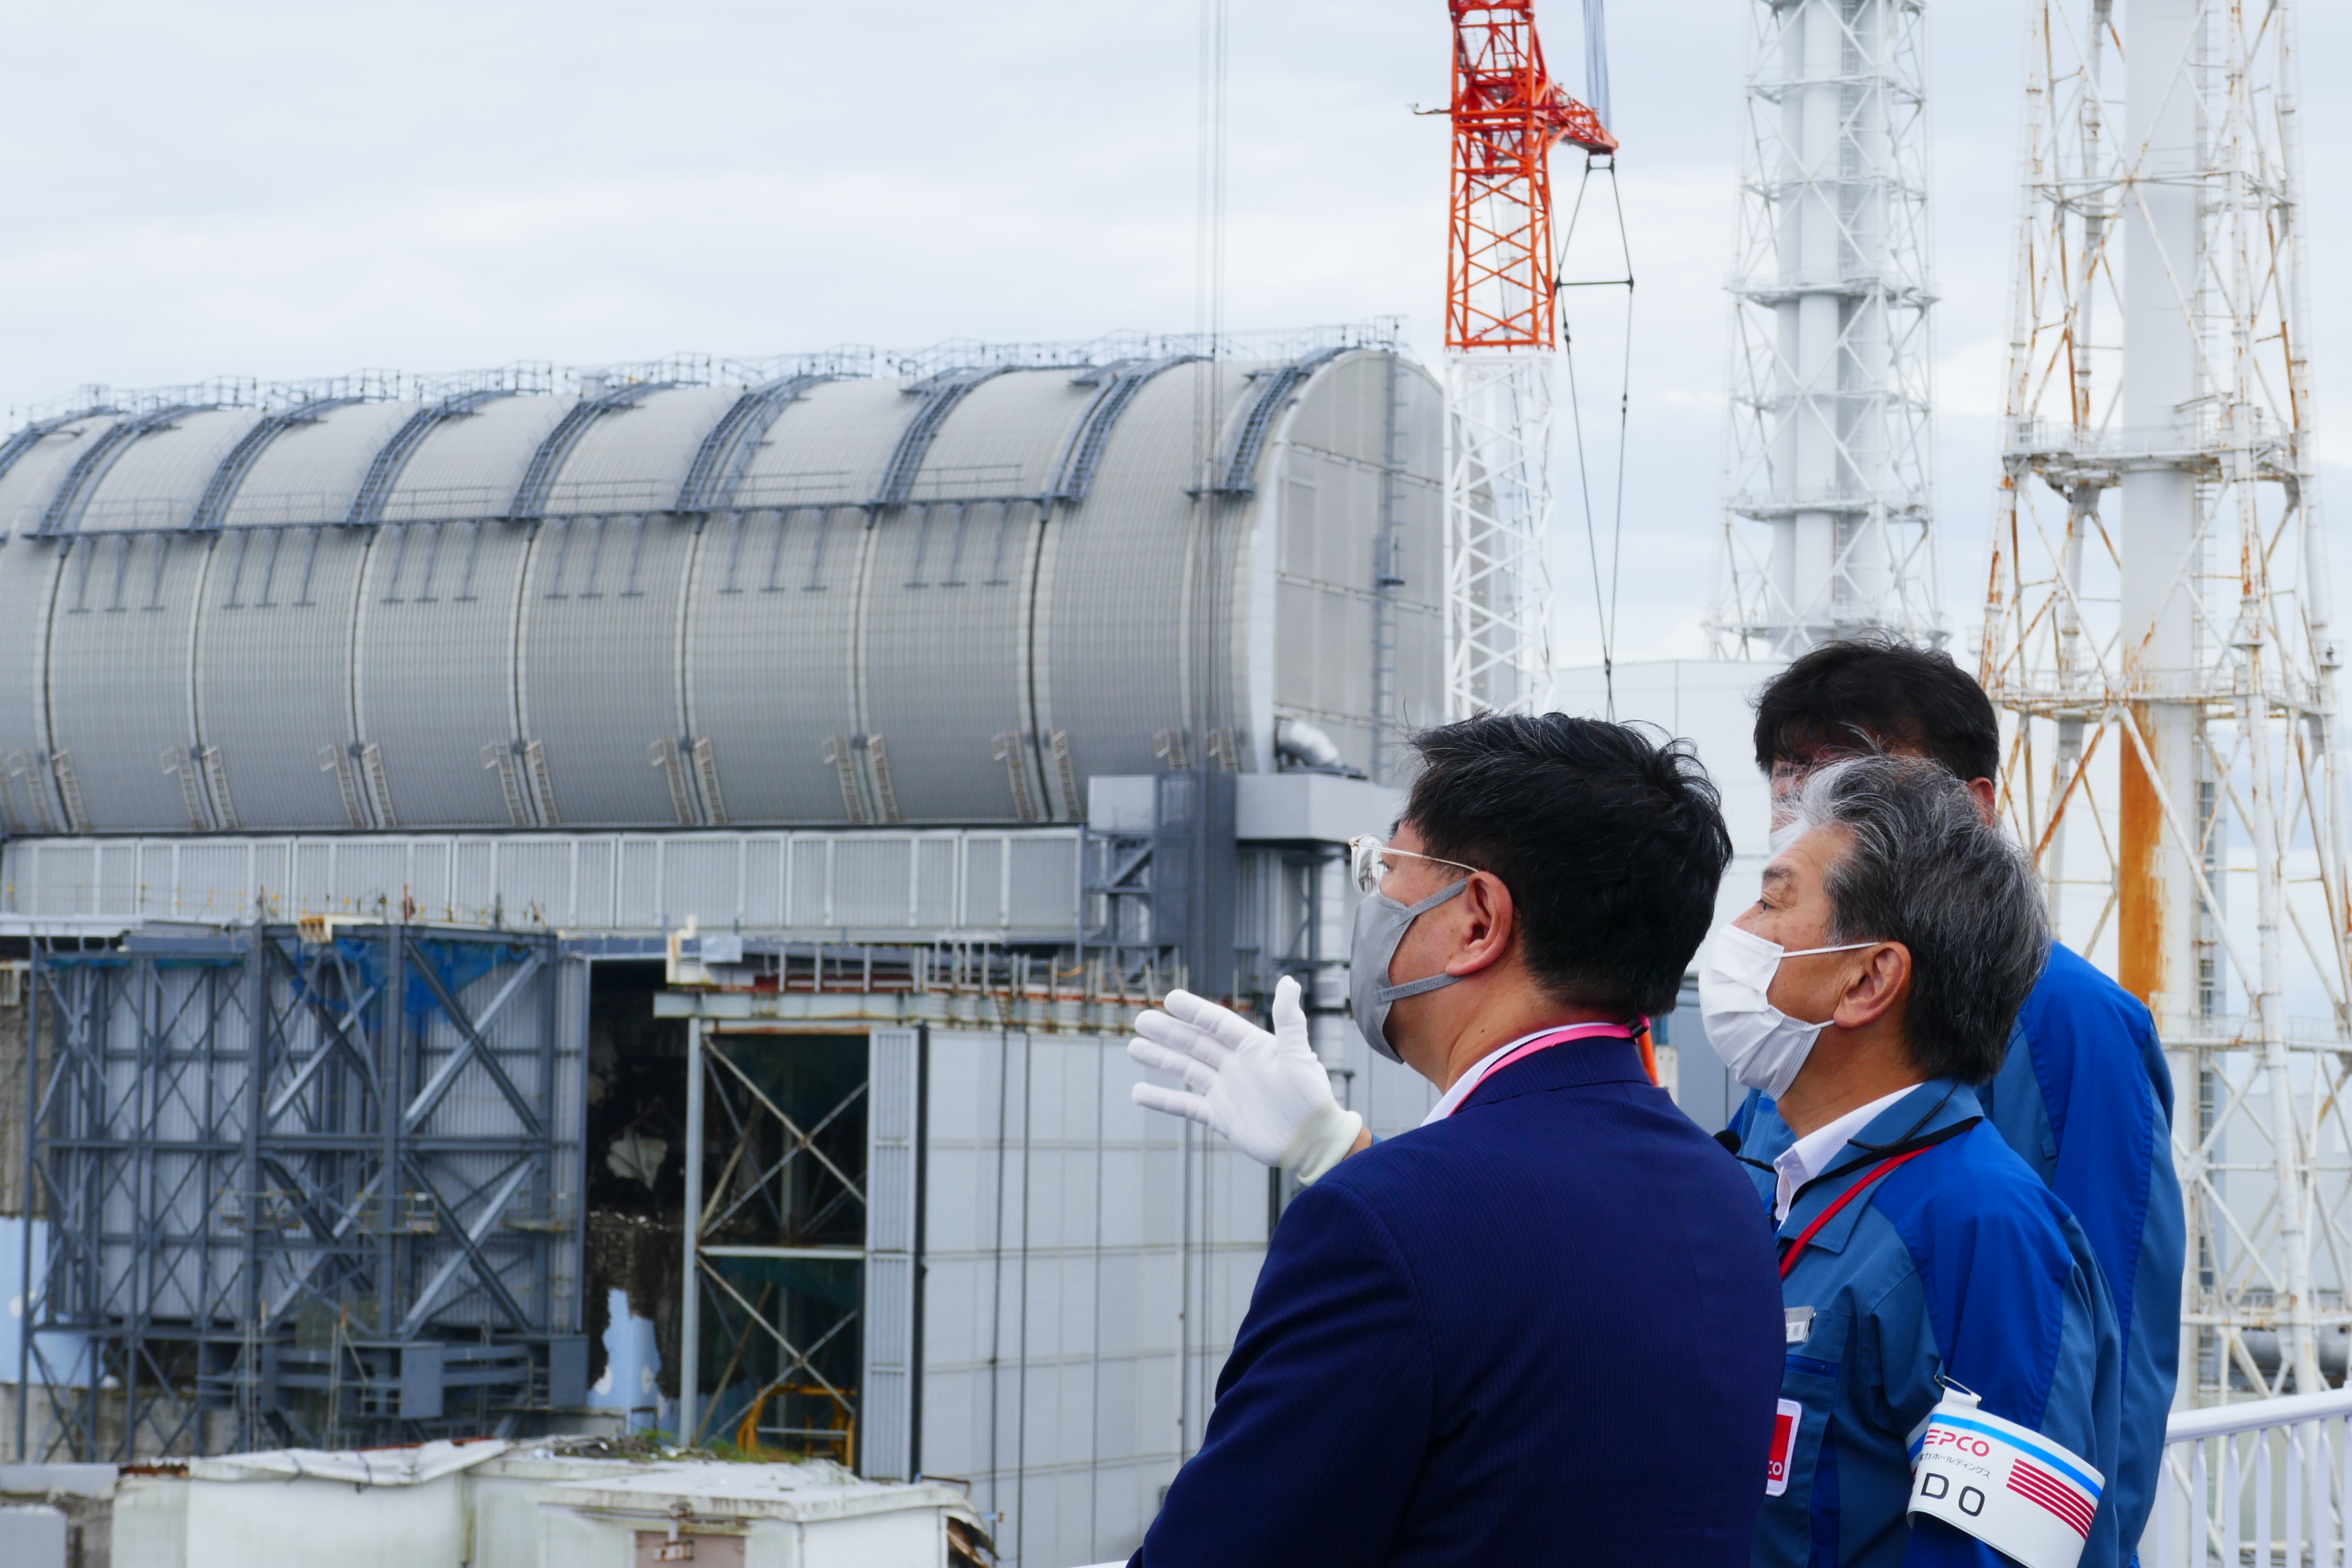 松野内閣官房長官による福島第一原子力発電所ご視察について